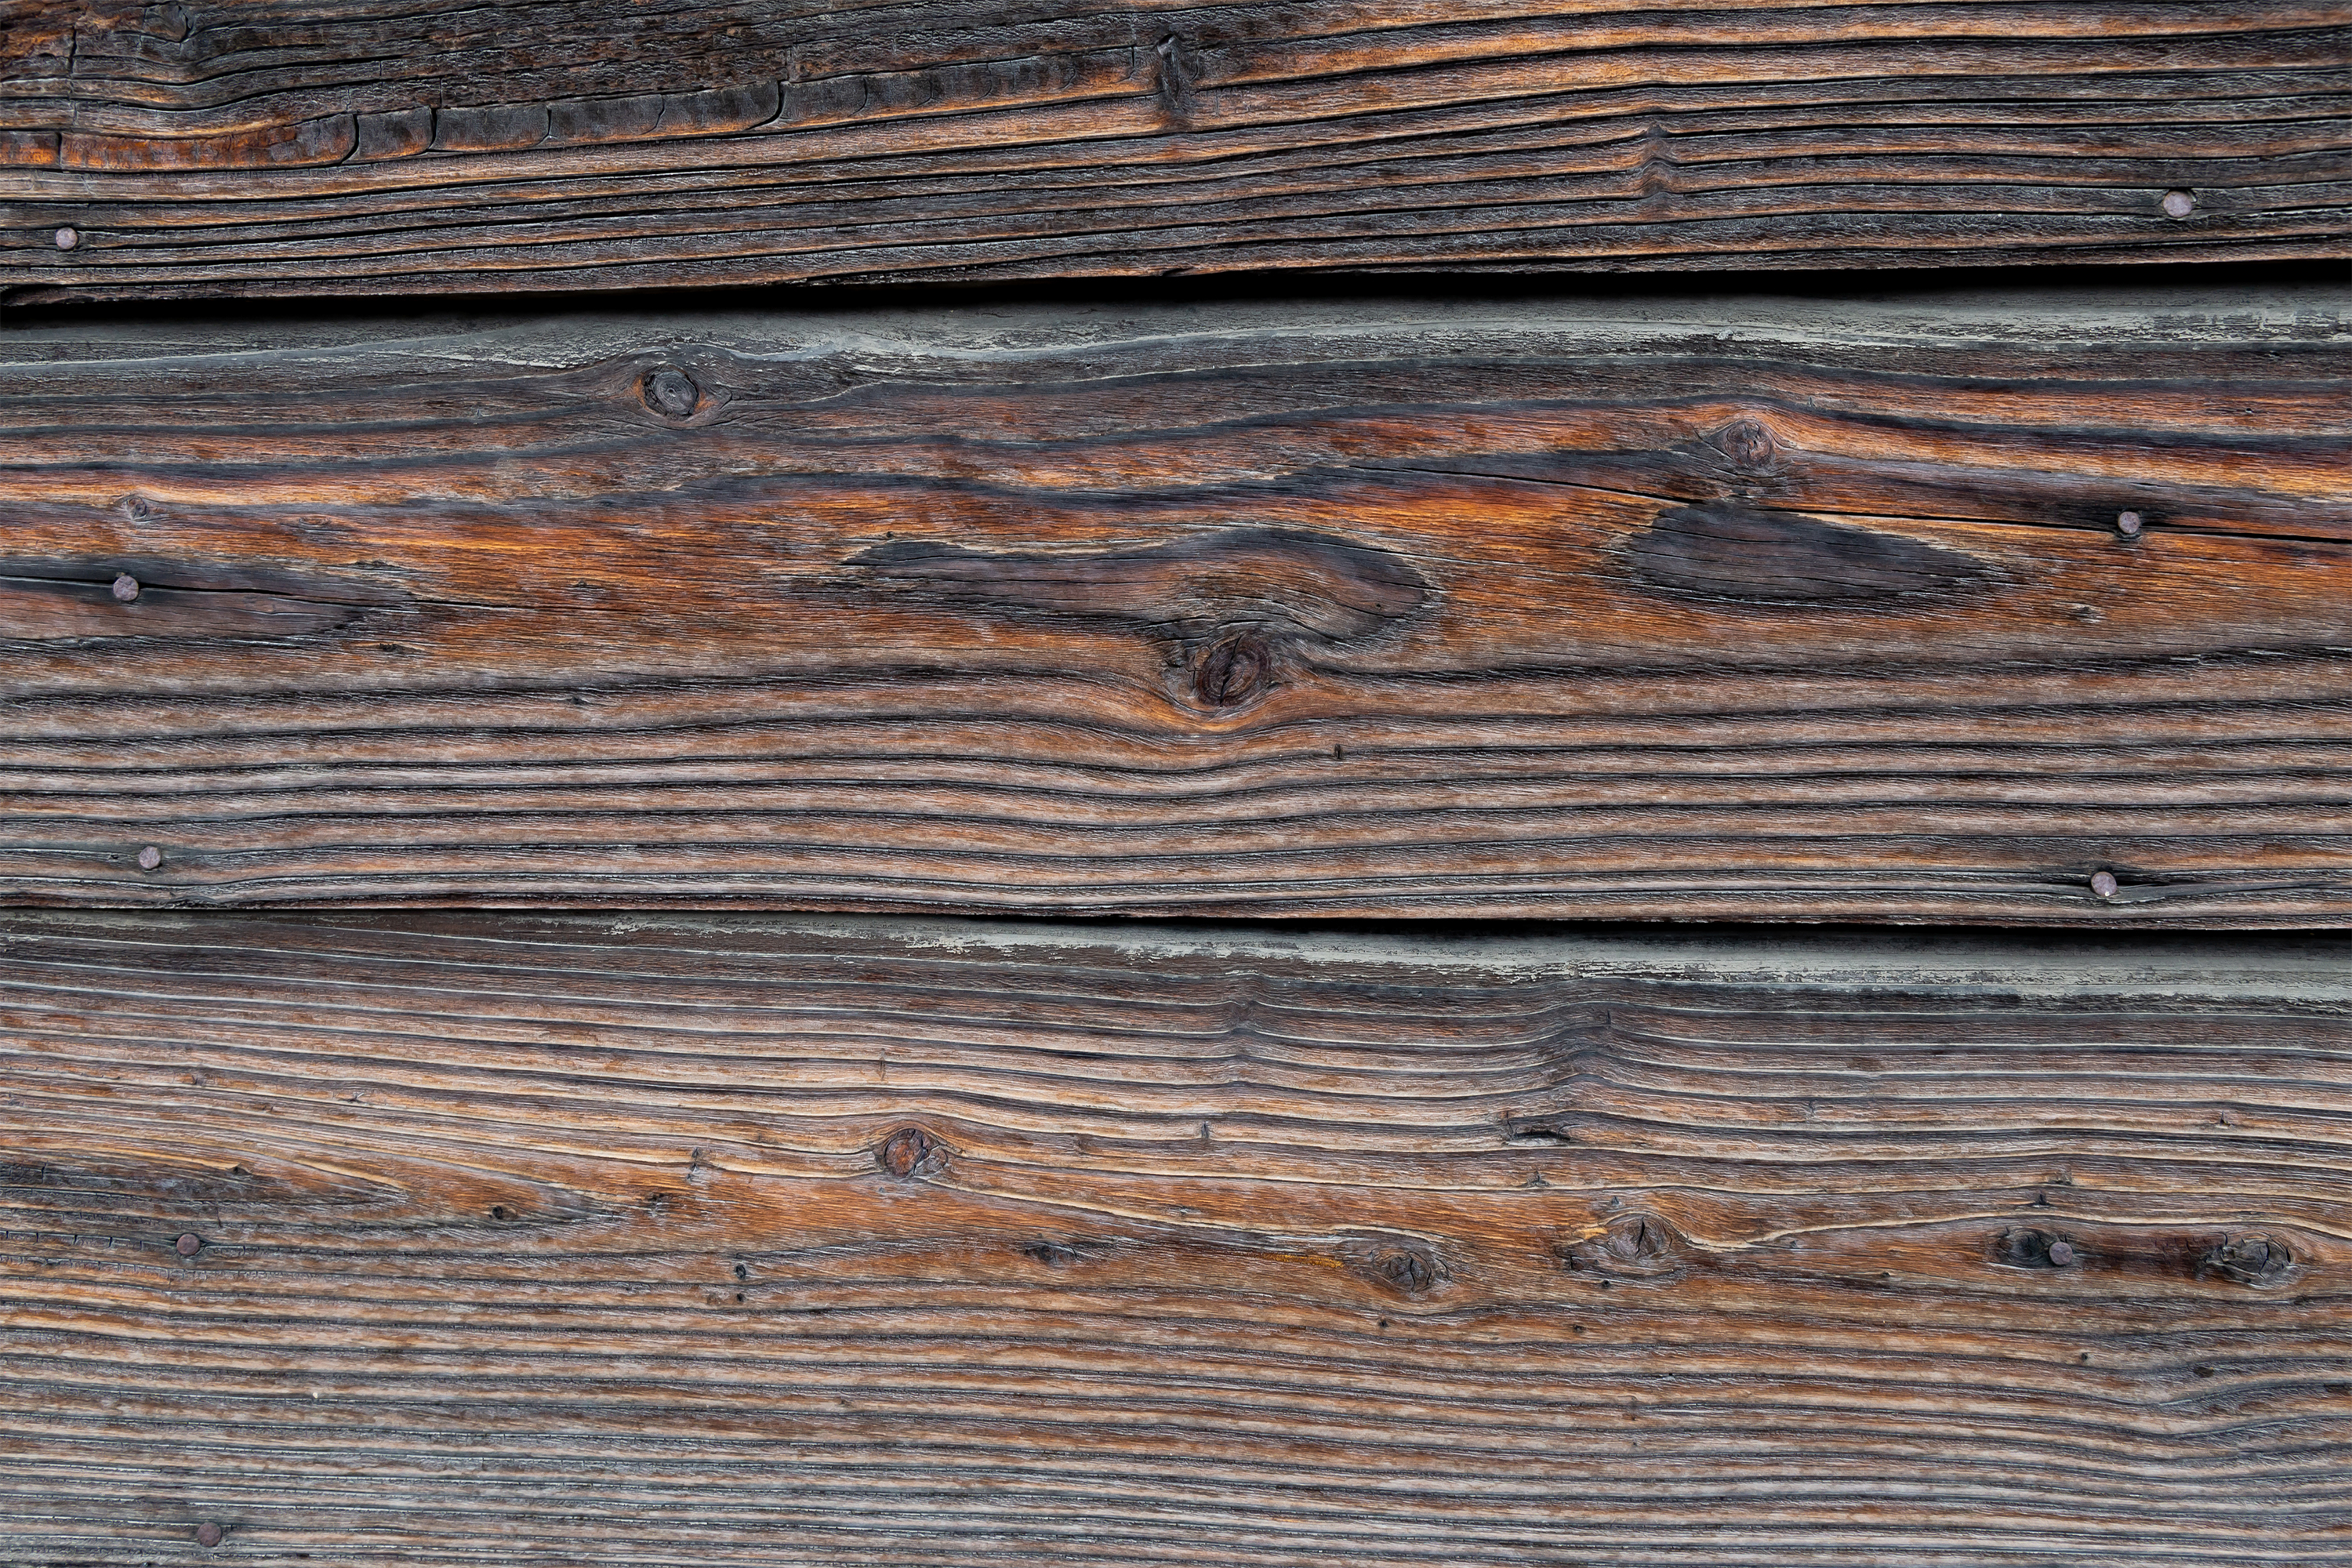 木目のテクスチャー 無料の高画質フリー写真素材 イメージズラボ